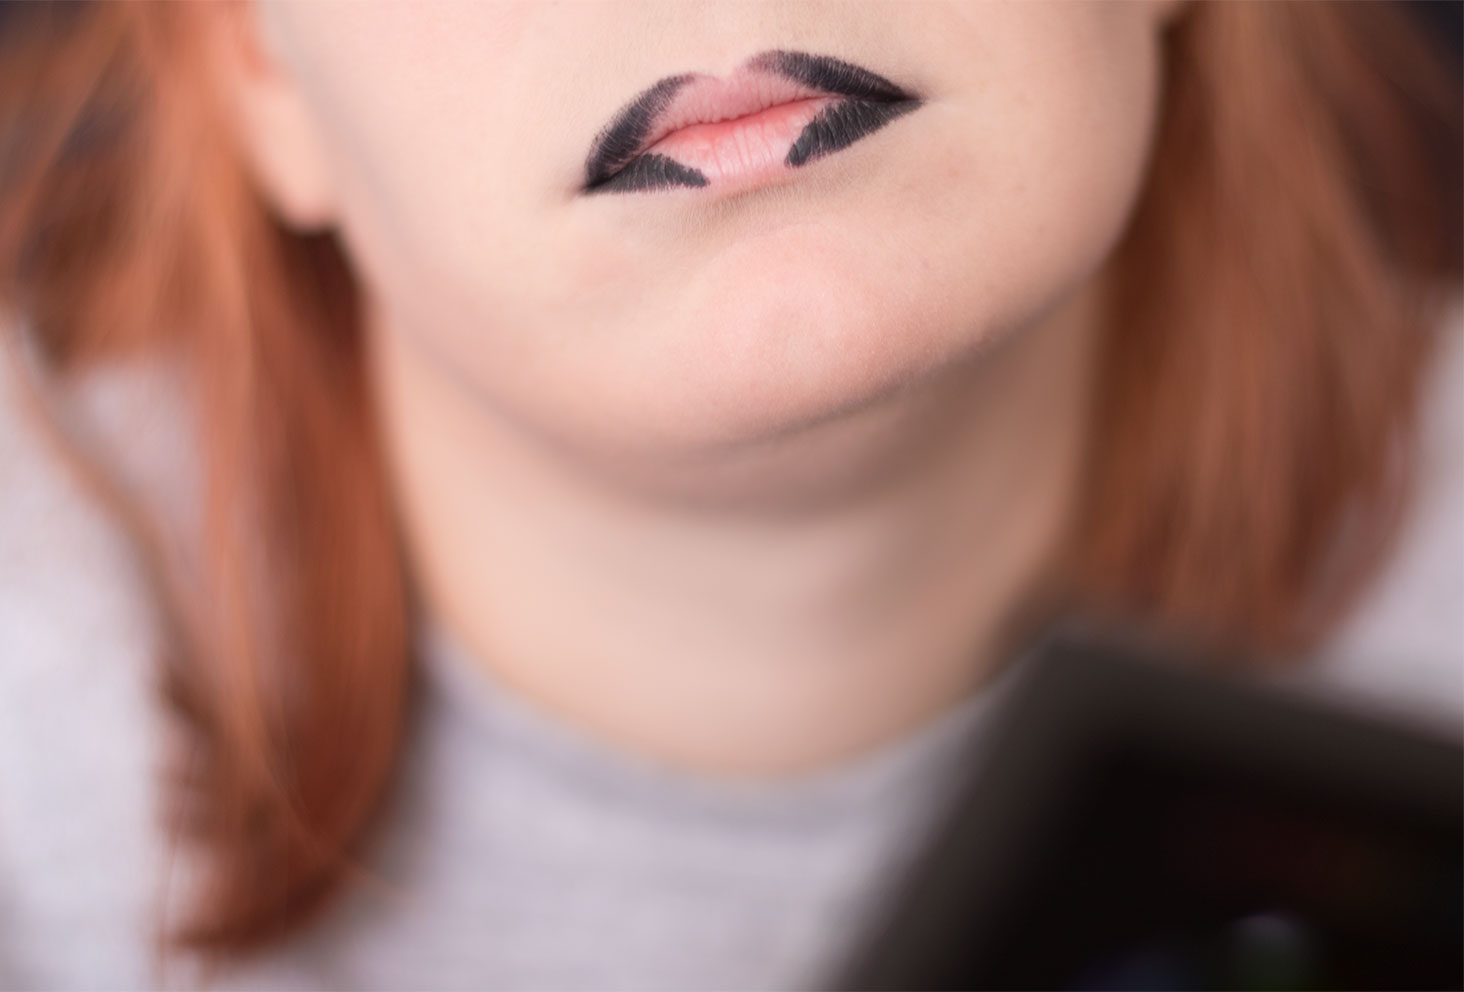 Résultat du contour des lèvres noir avant le dégradé